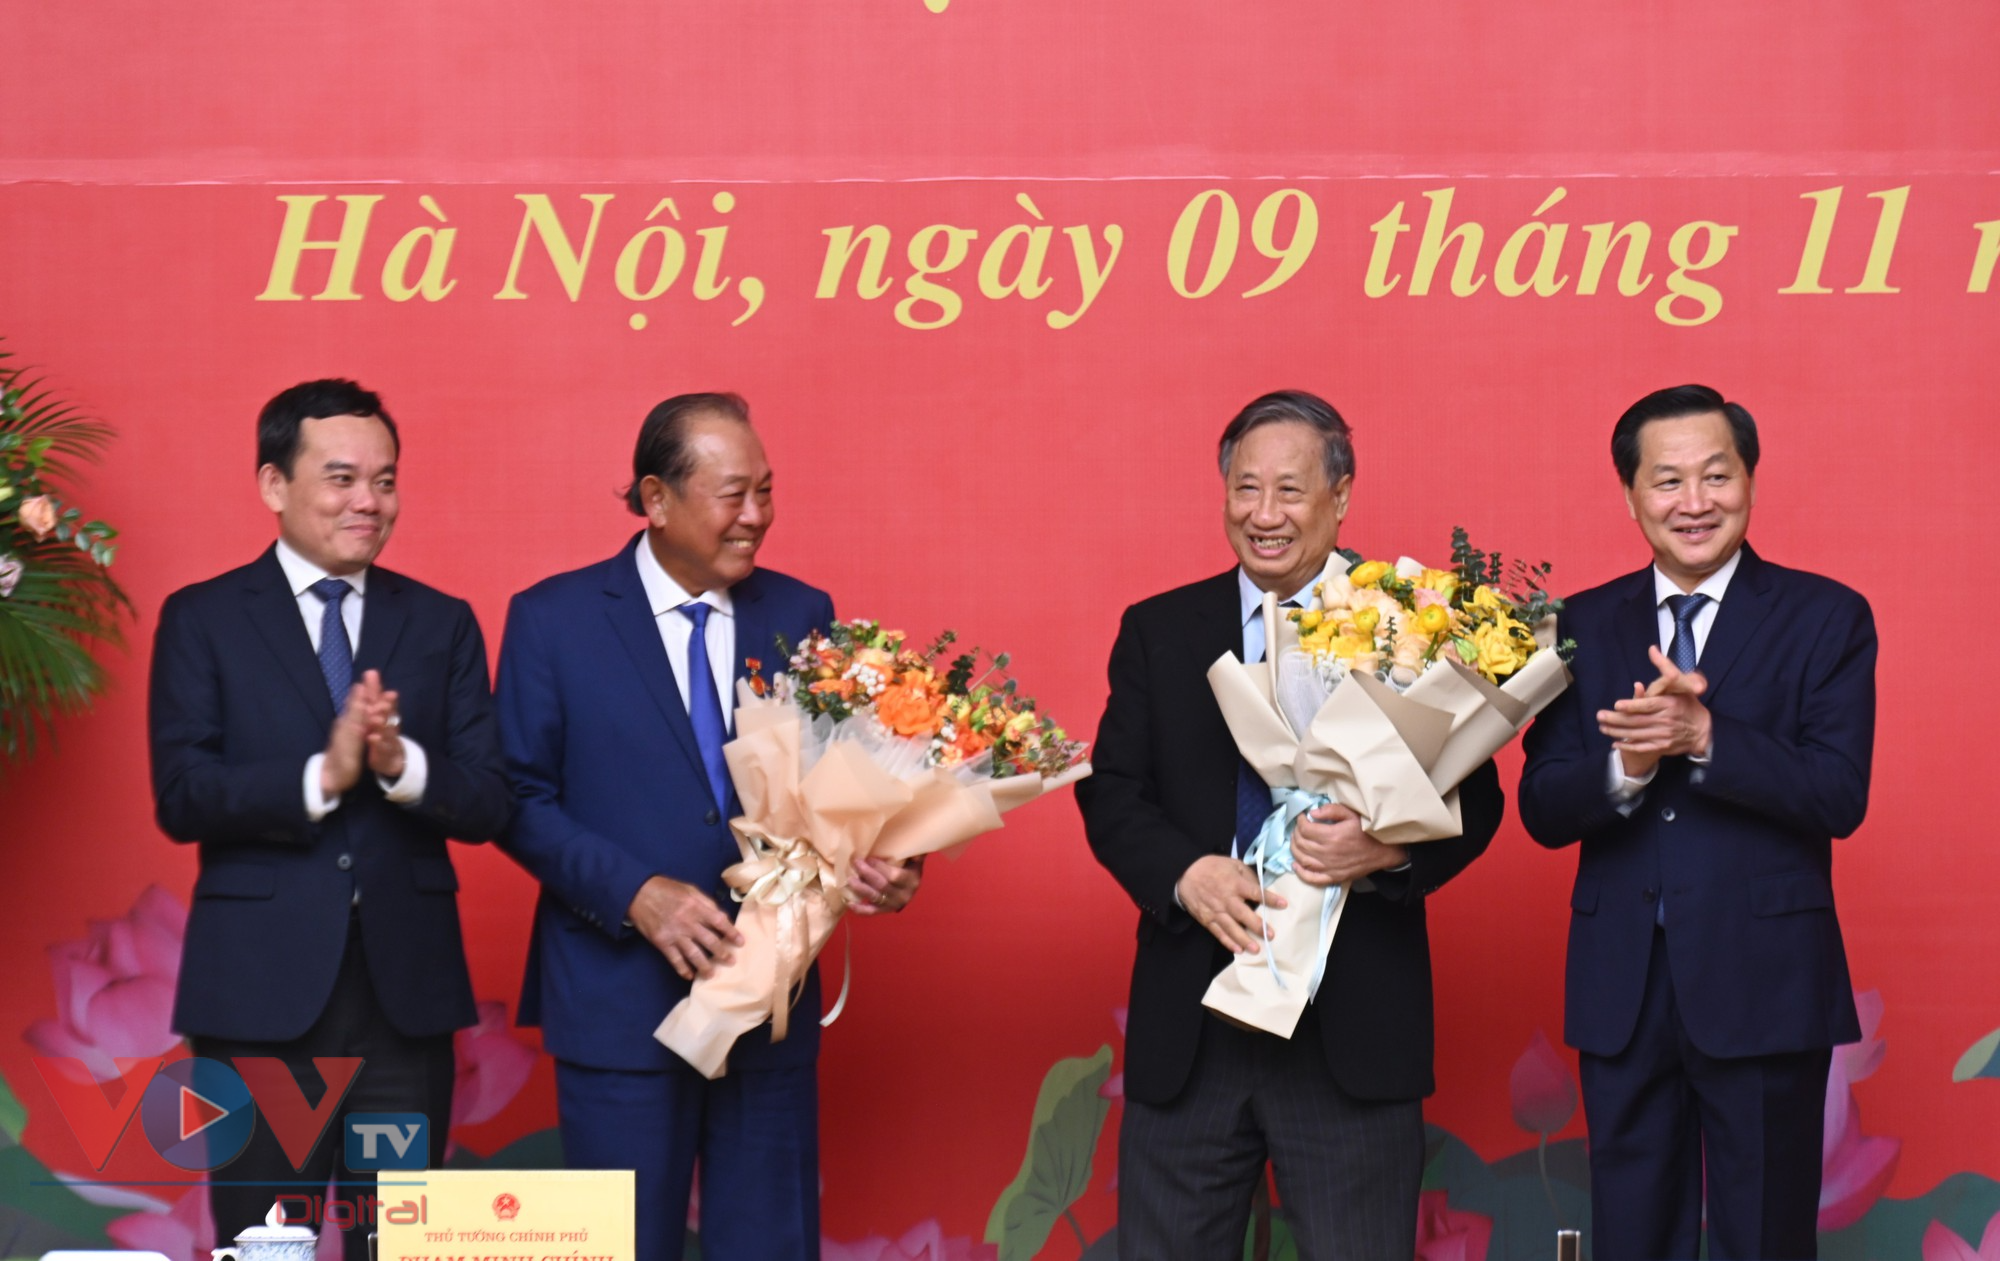 Thủ tướng trao Huy hiệu Đảng cho các đồng chí Phạm Gia Khiêm và Trương Hòa Bình - Ảnh 4.